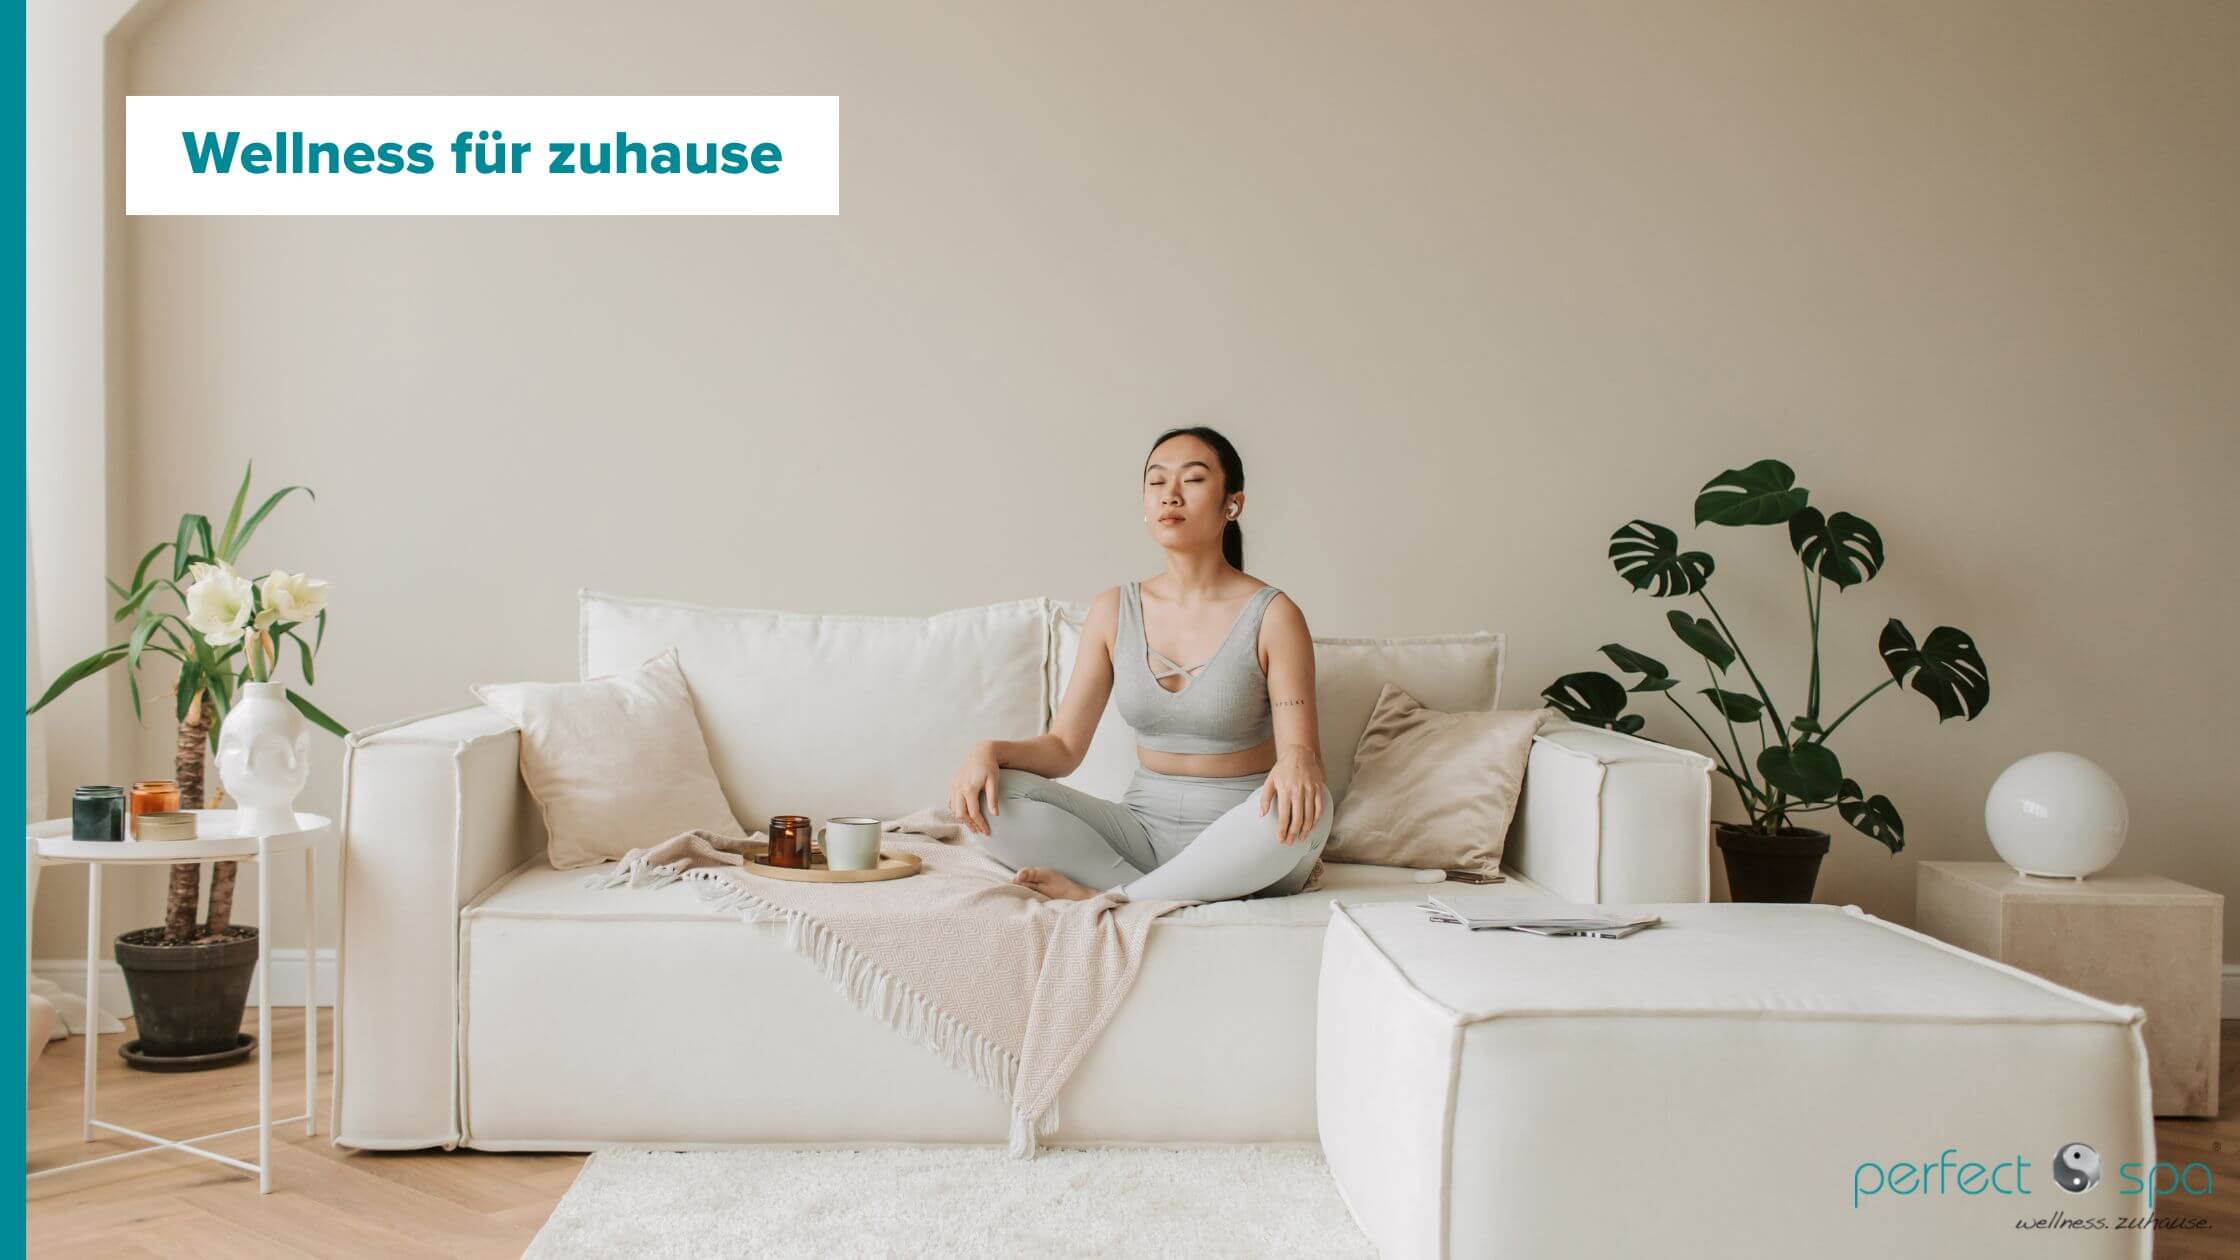 Junge Frau meditiert auf der Couch und genießt ihren Wellnesstag